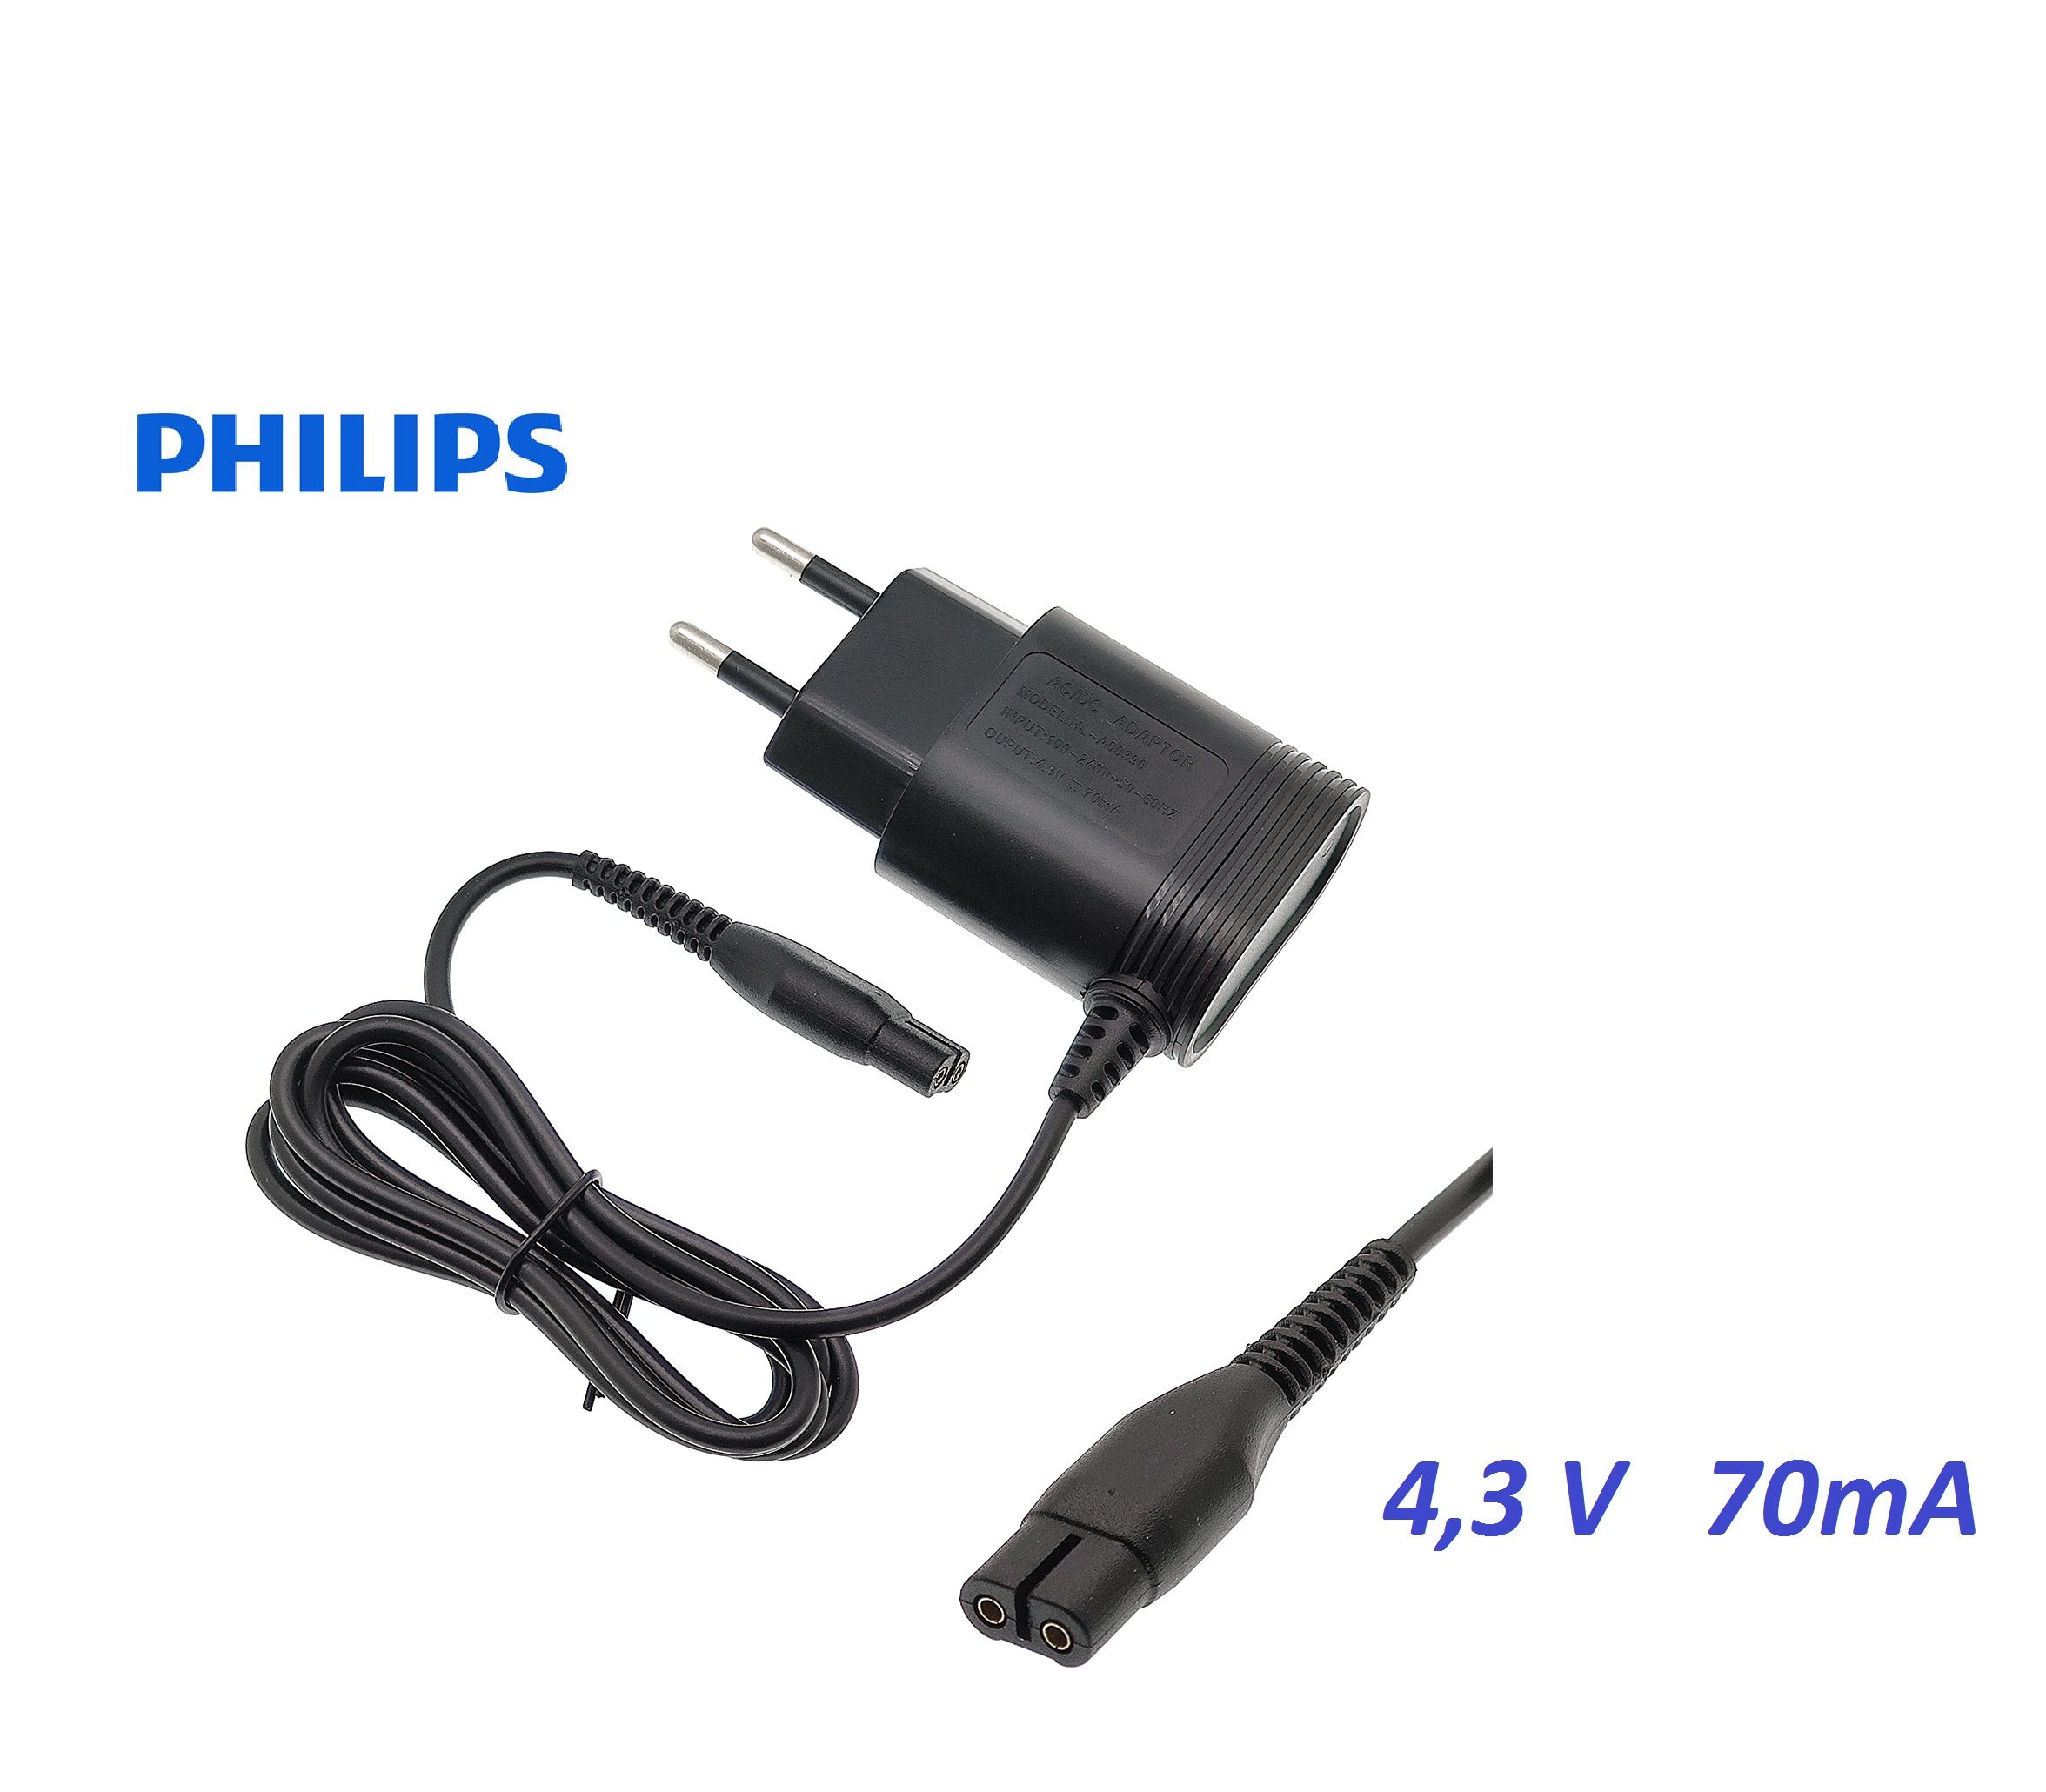 Philips 2000 series xb2042